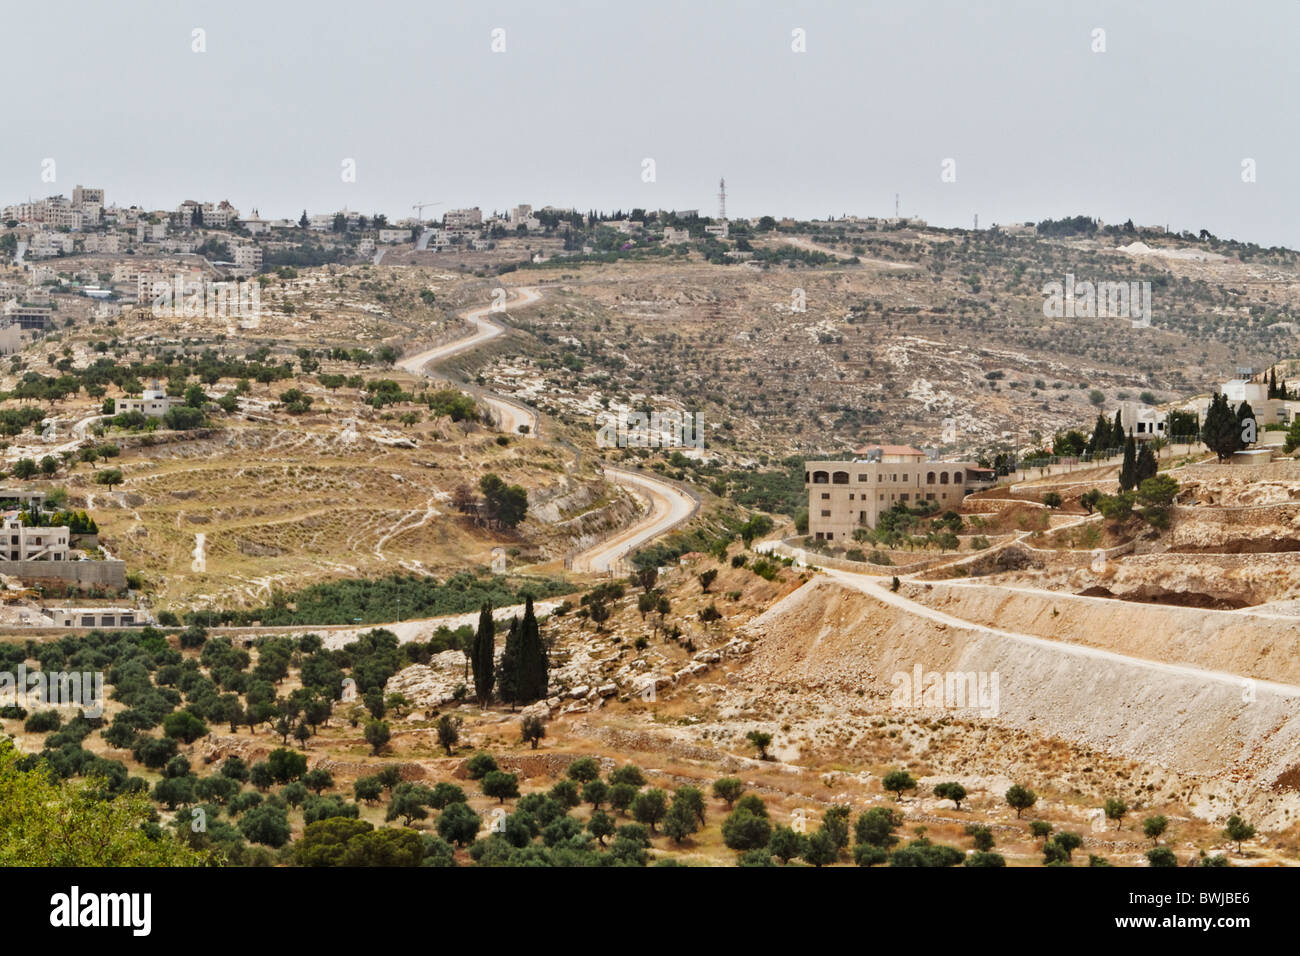 Die Mauer um die West Bank Gebiete Sperrung des Zugangs für die Palästinenser, die von ihm eingesperrt fühlen Stockfoto